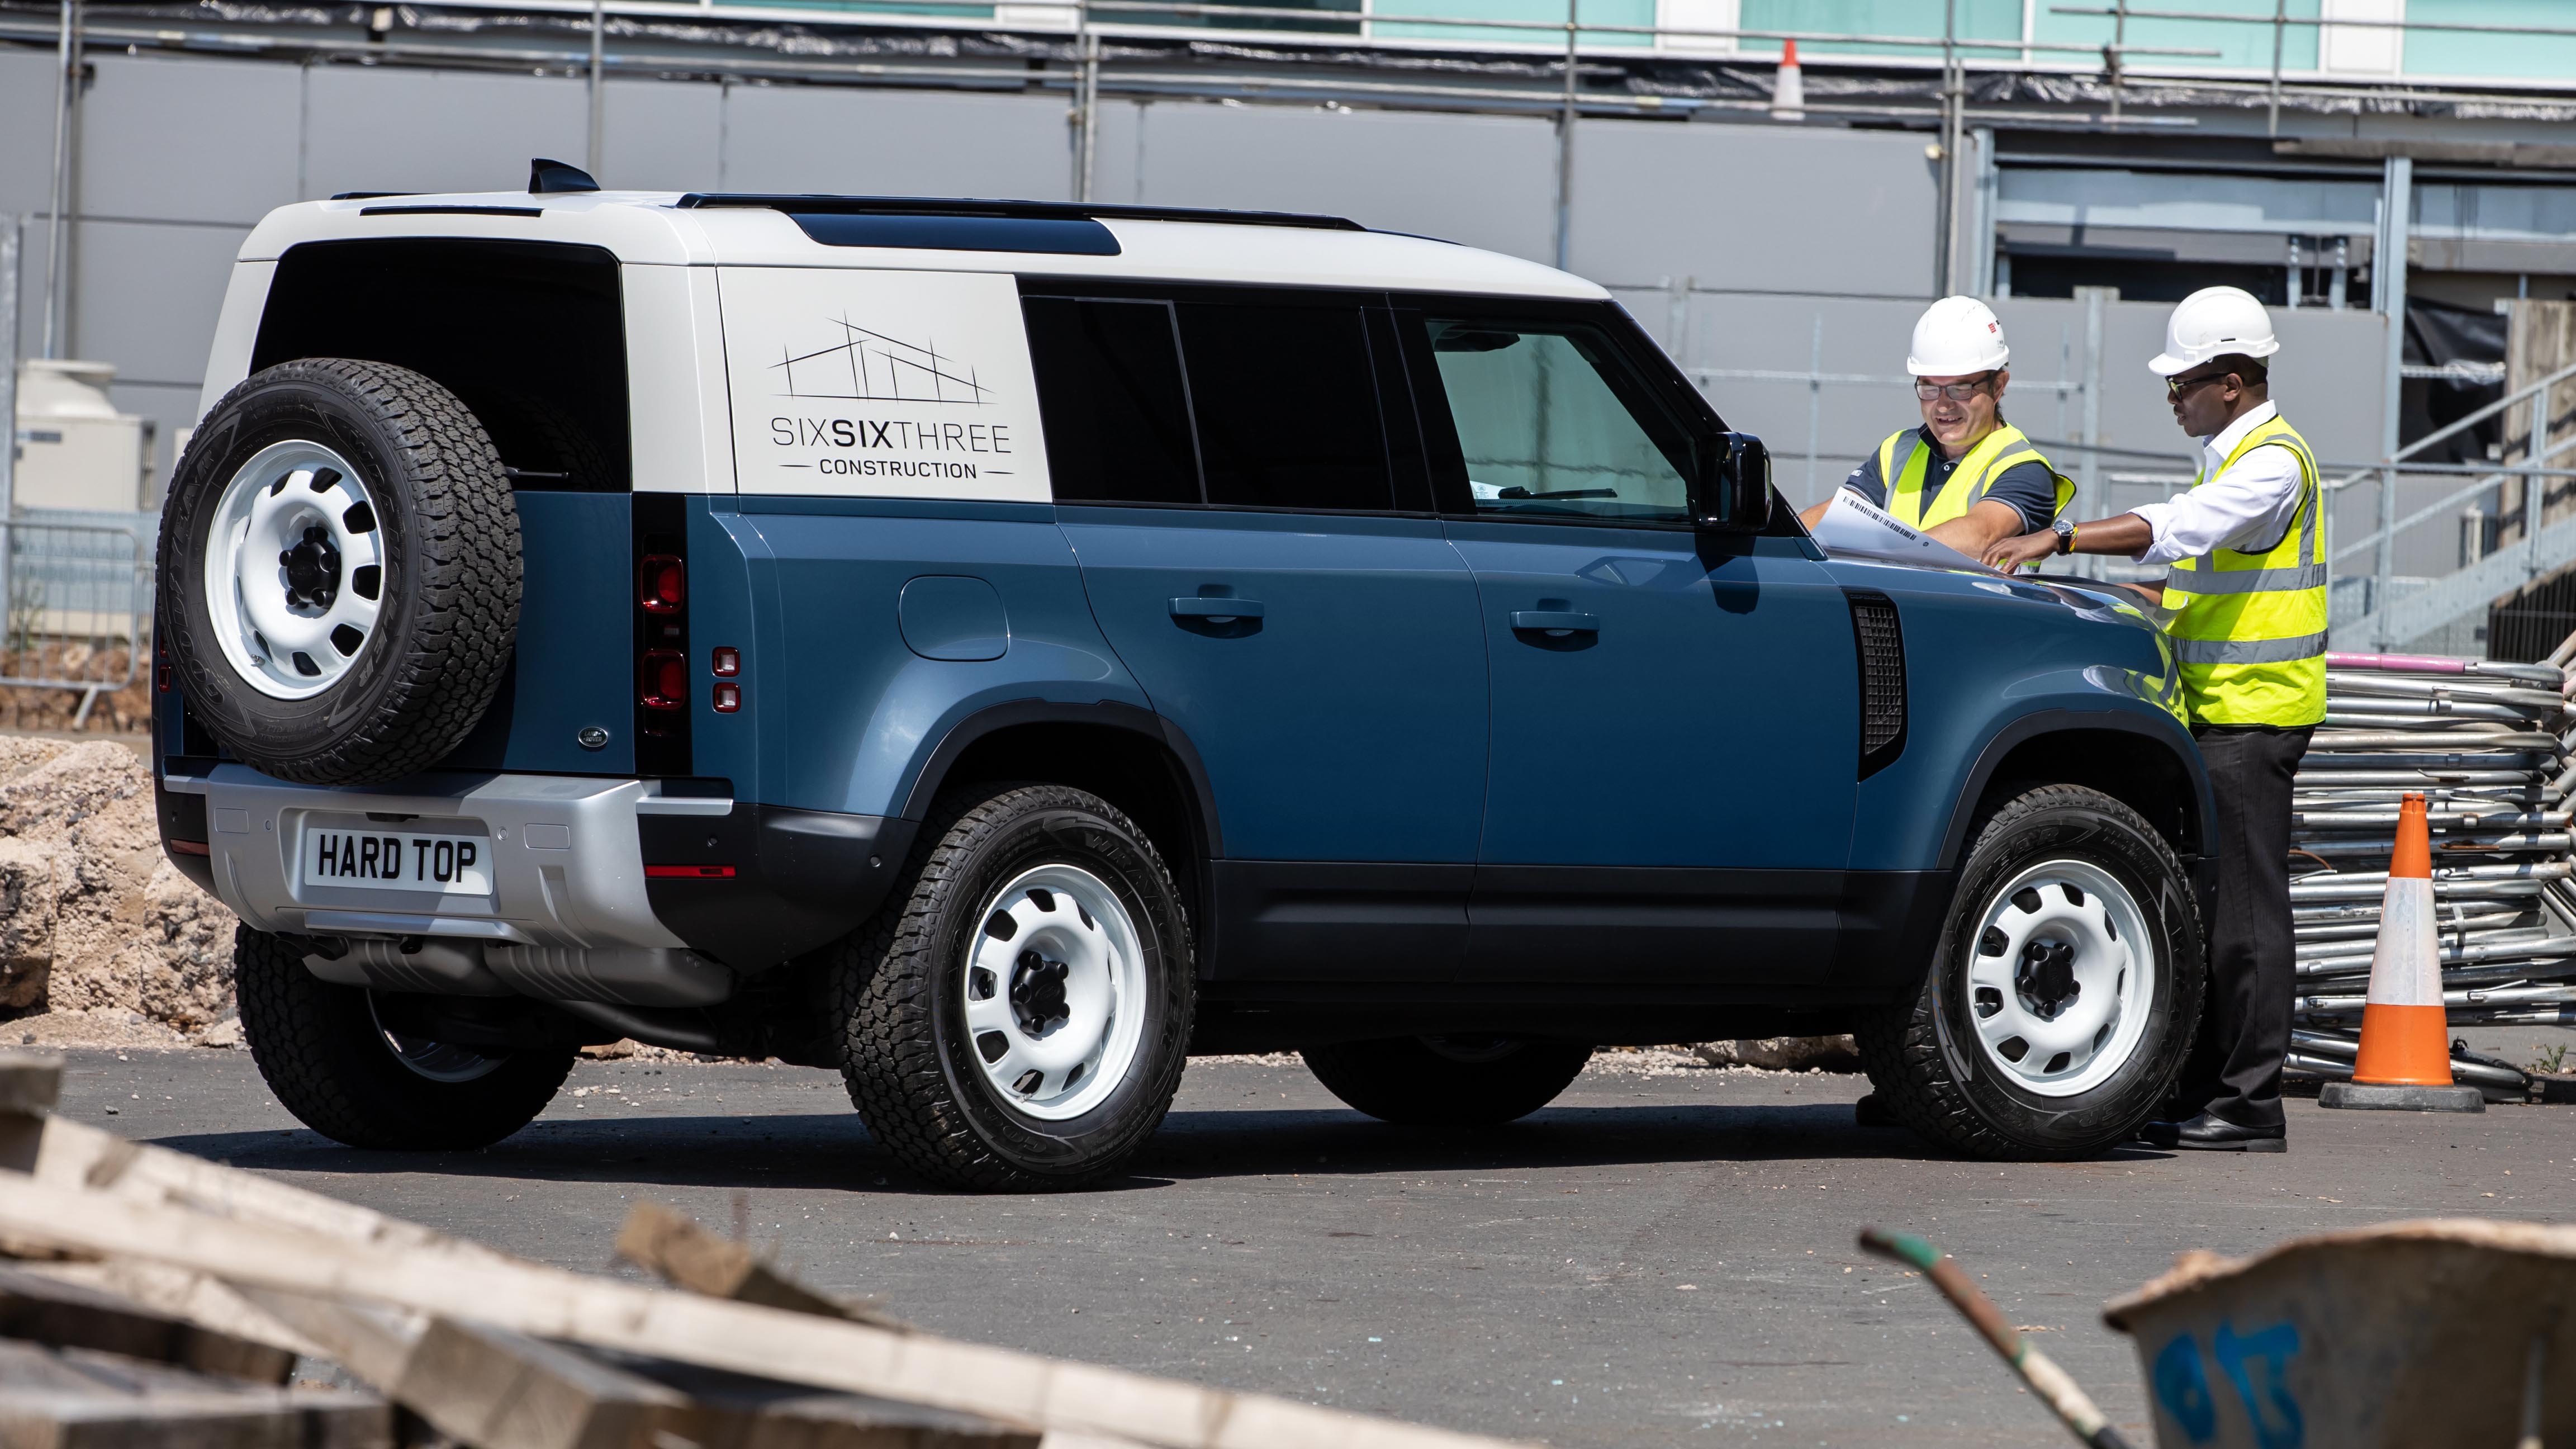 2020 Land Rover Defender Hard Top commercial model arrives